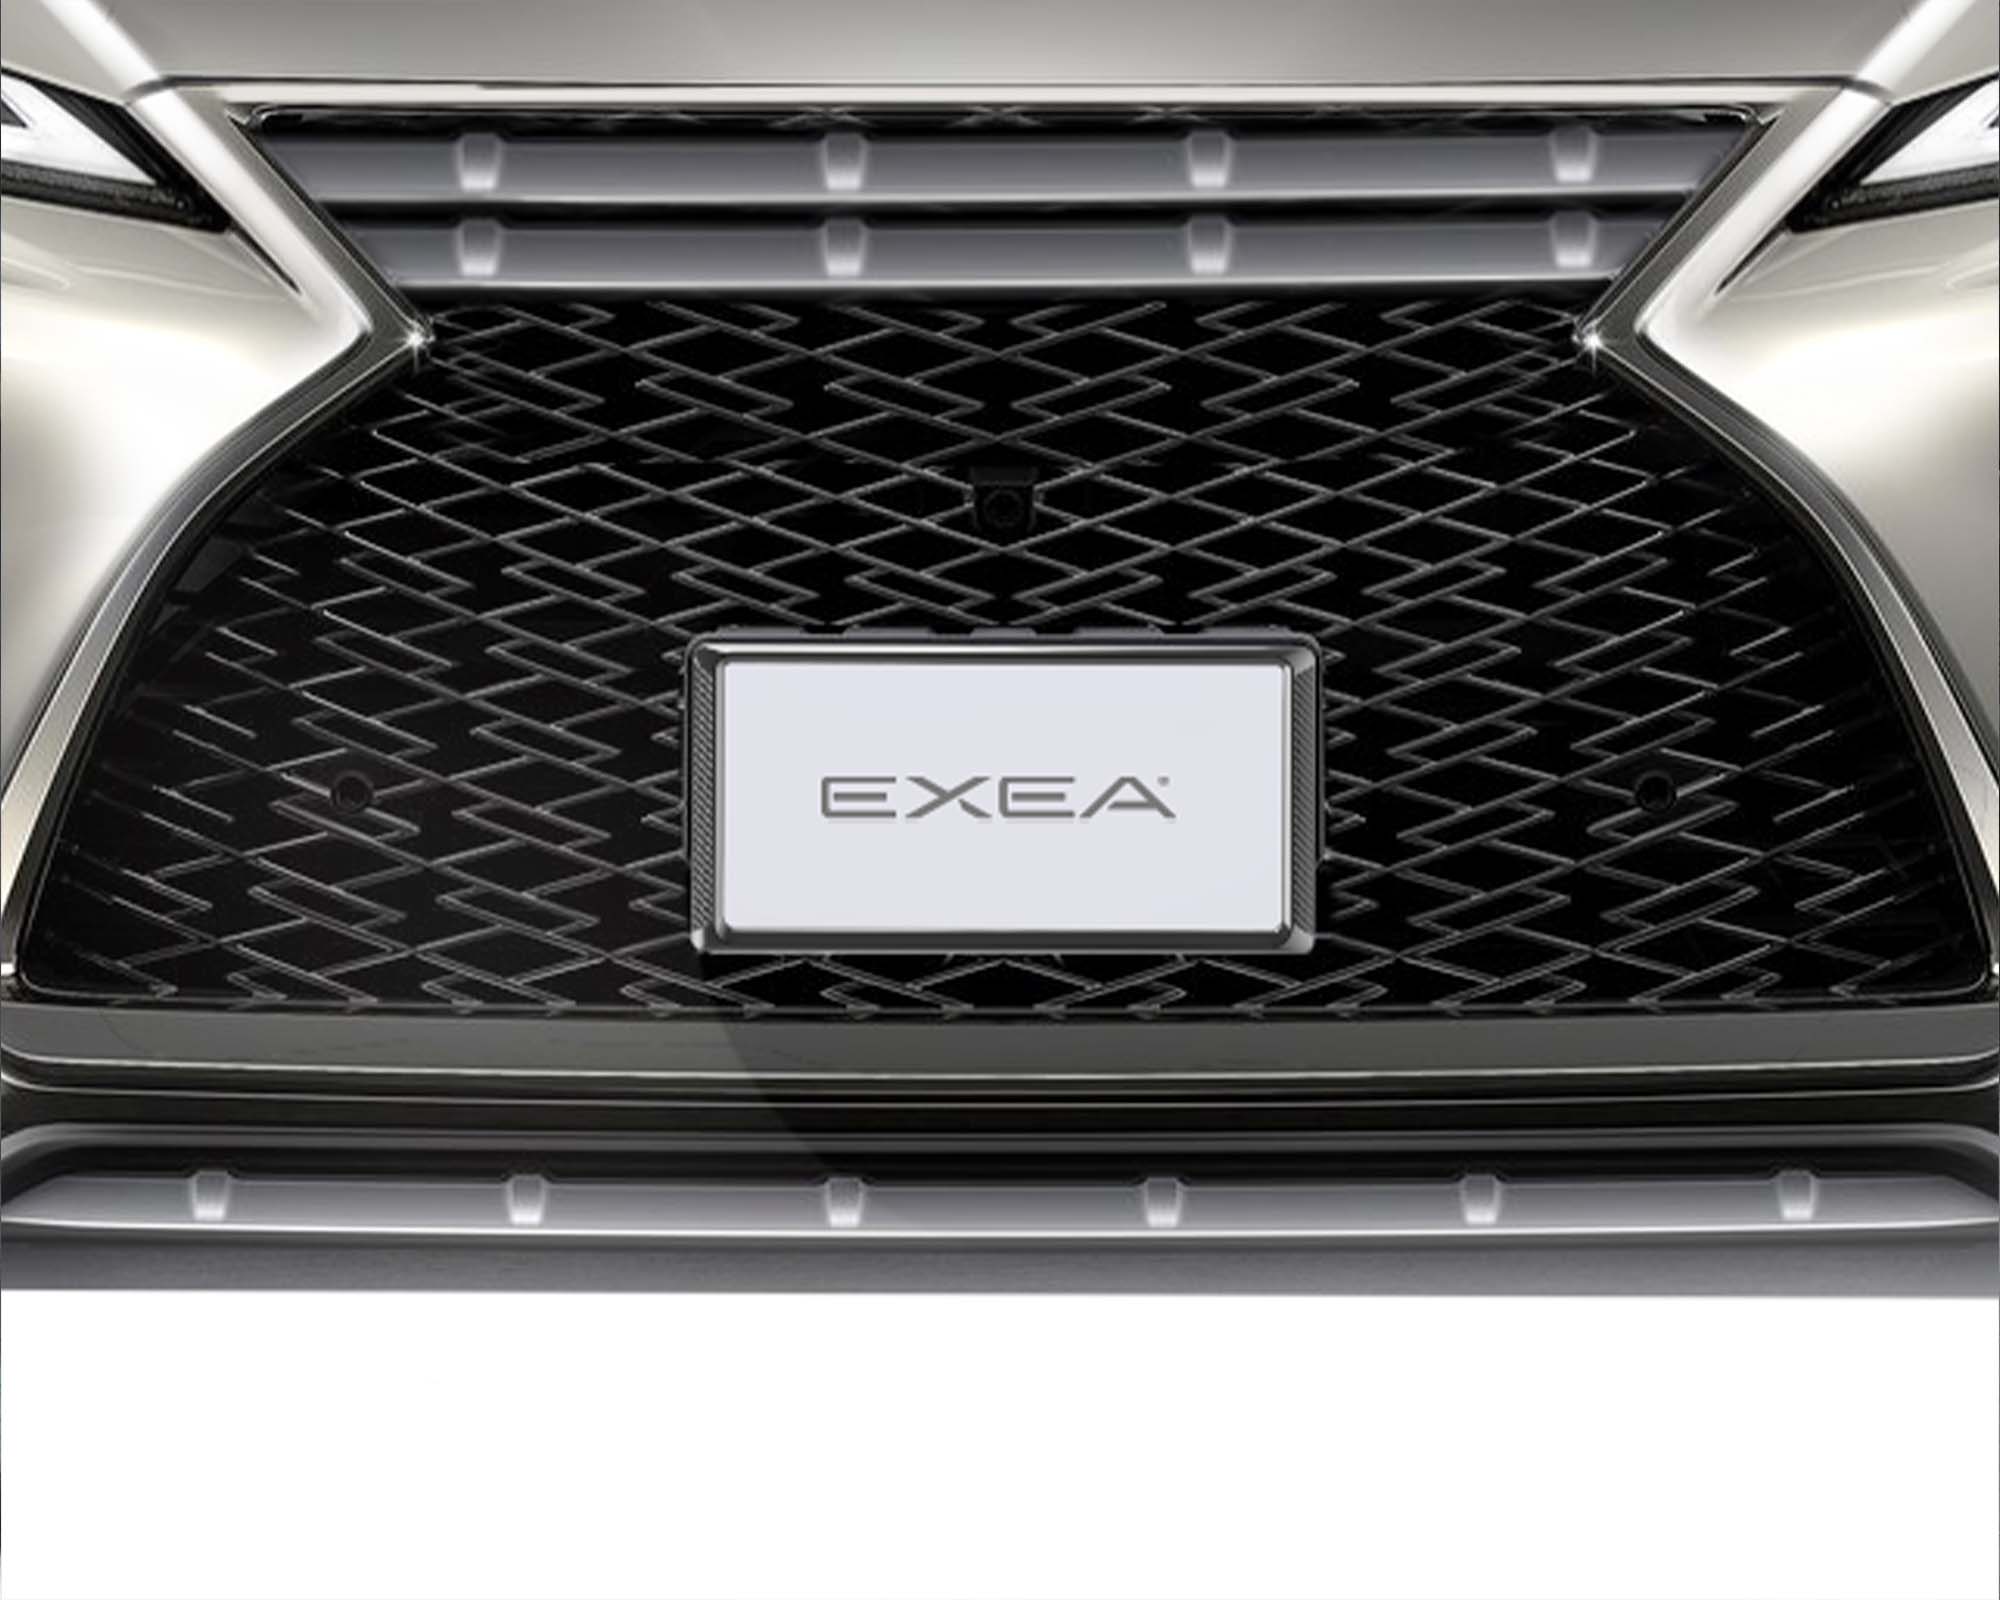 タフネスボルトワッシャー BK EX-212  ナンバーボルト EXEA エクセア  １着でも送料無料 星光産業 車外用品